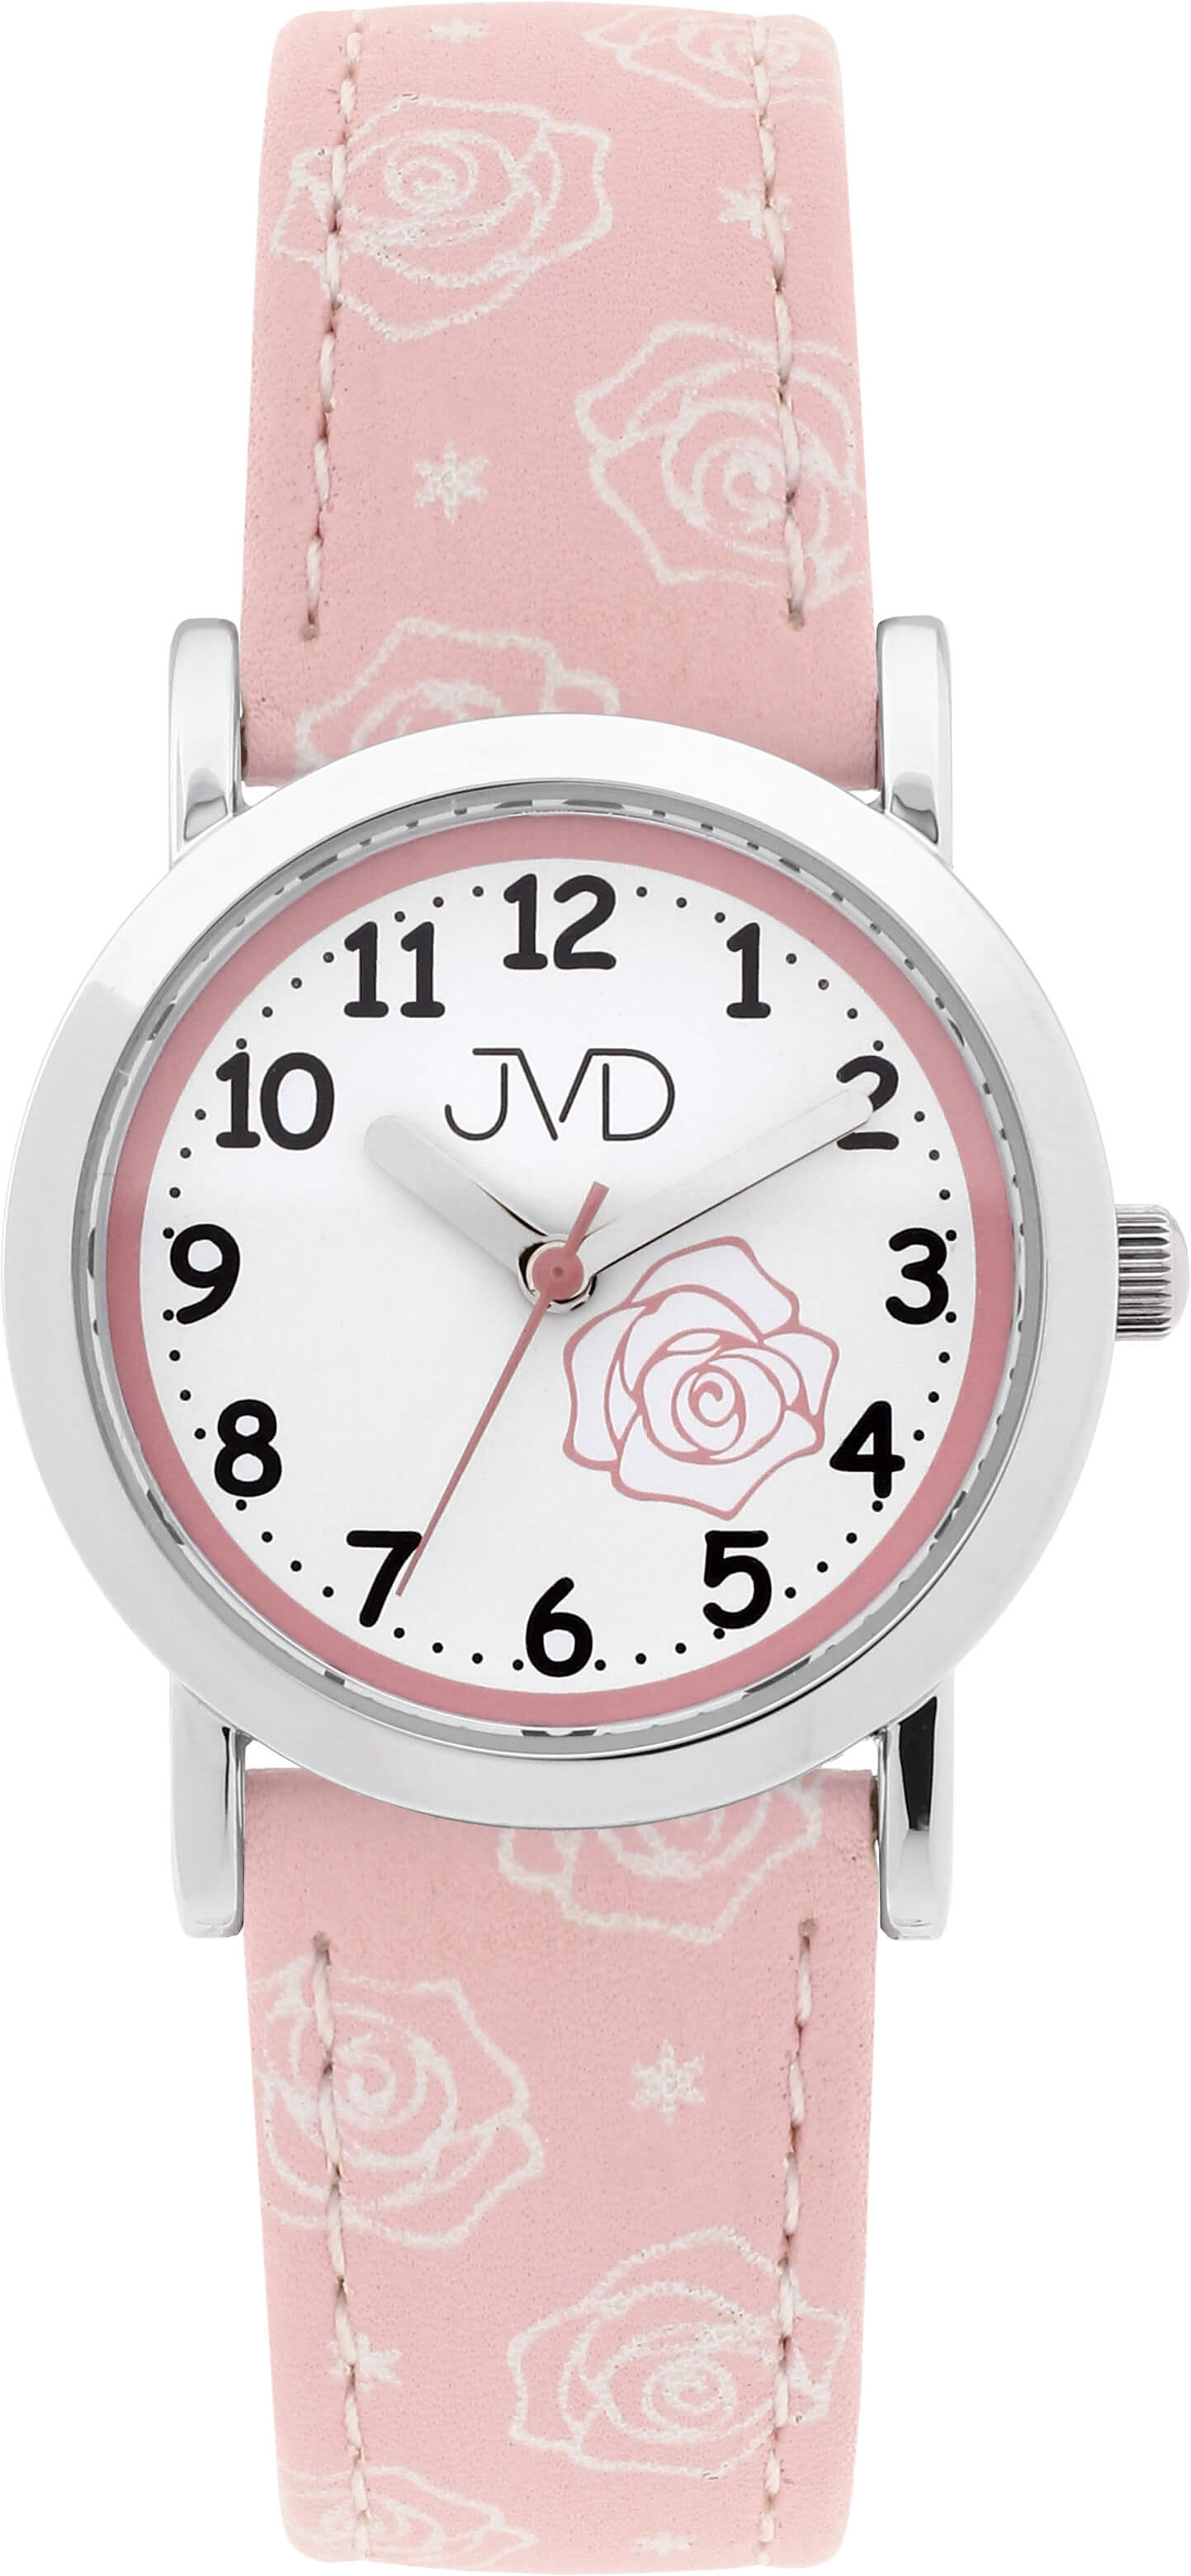 JVD Dětské hodinky J7205.3